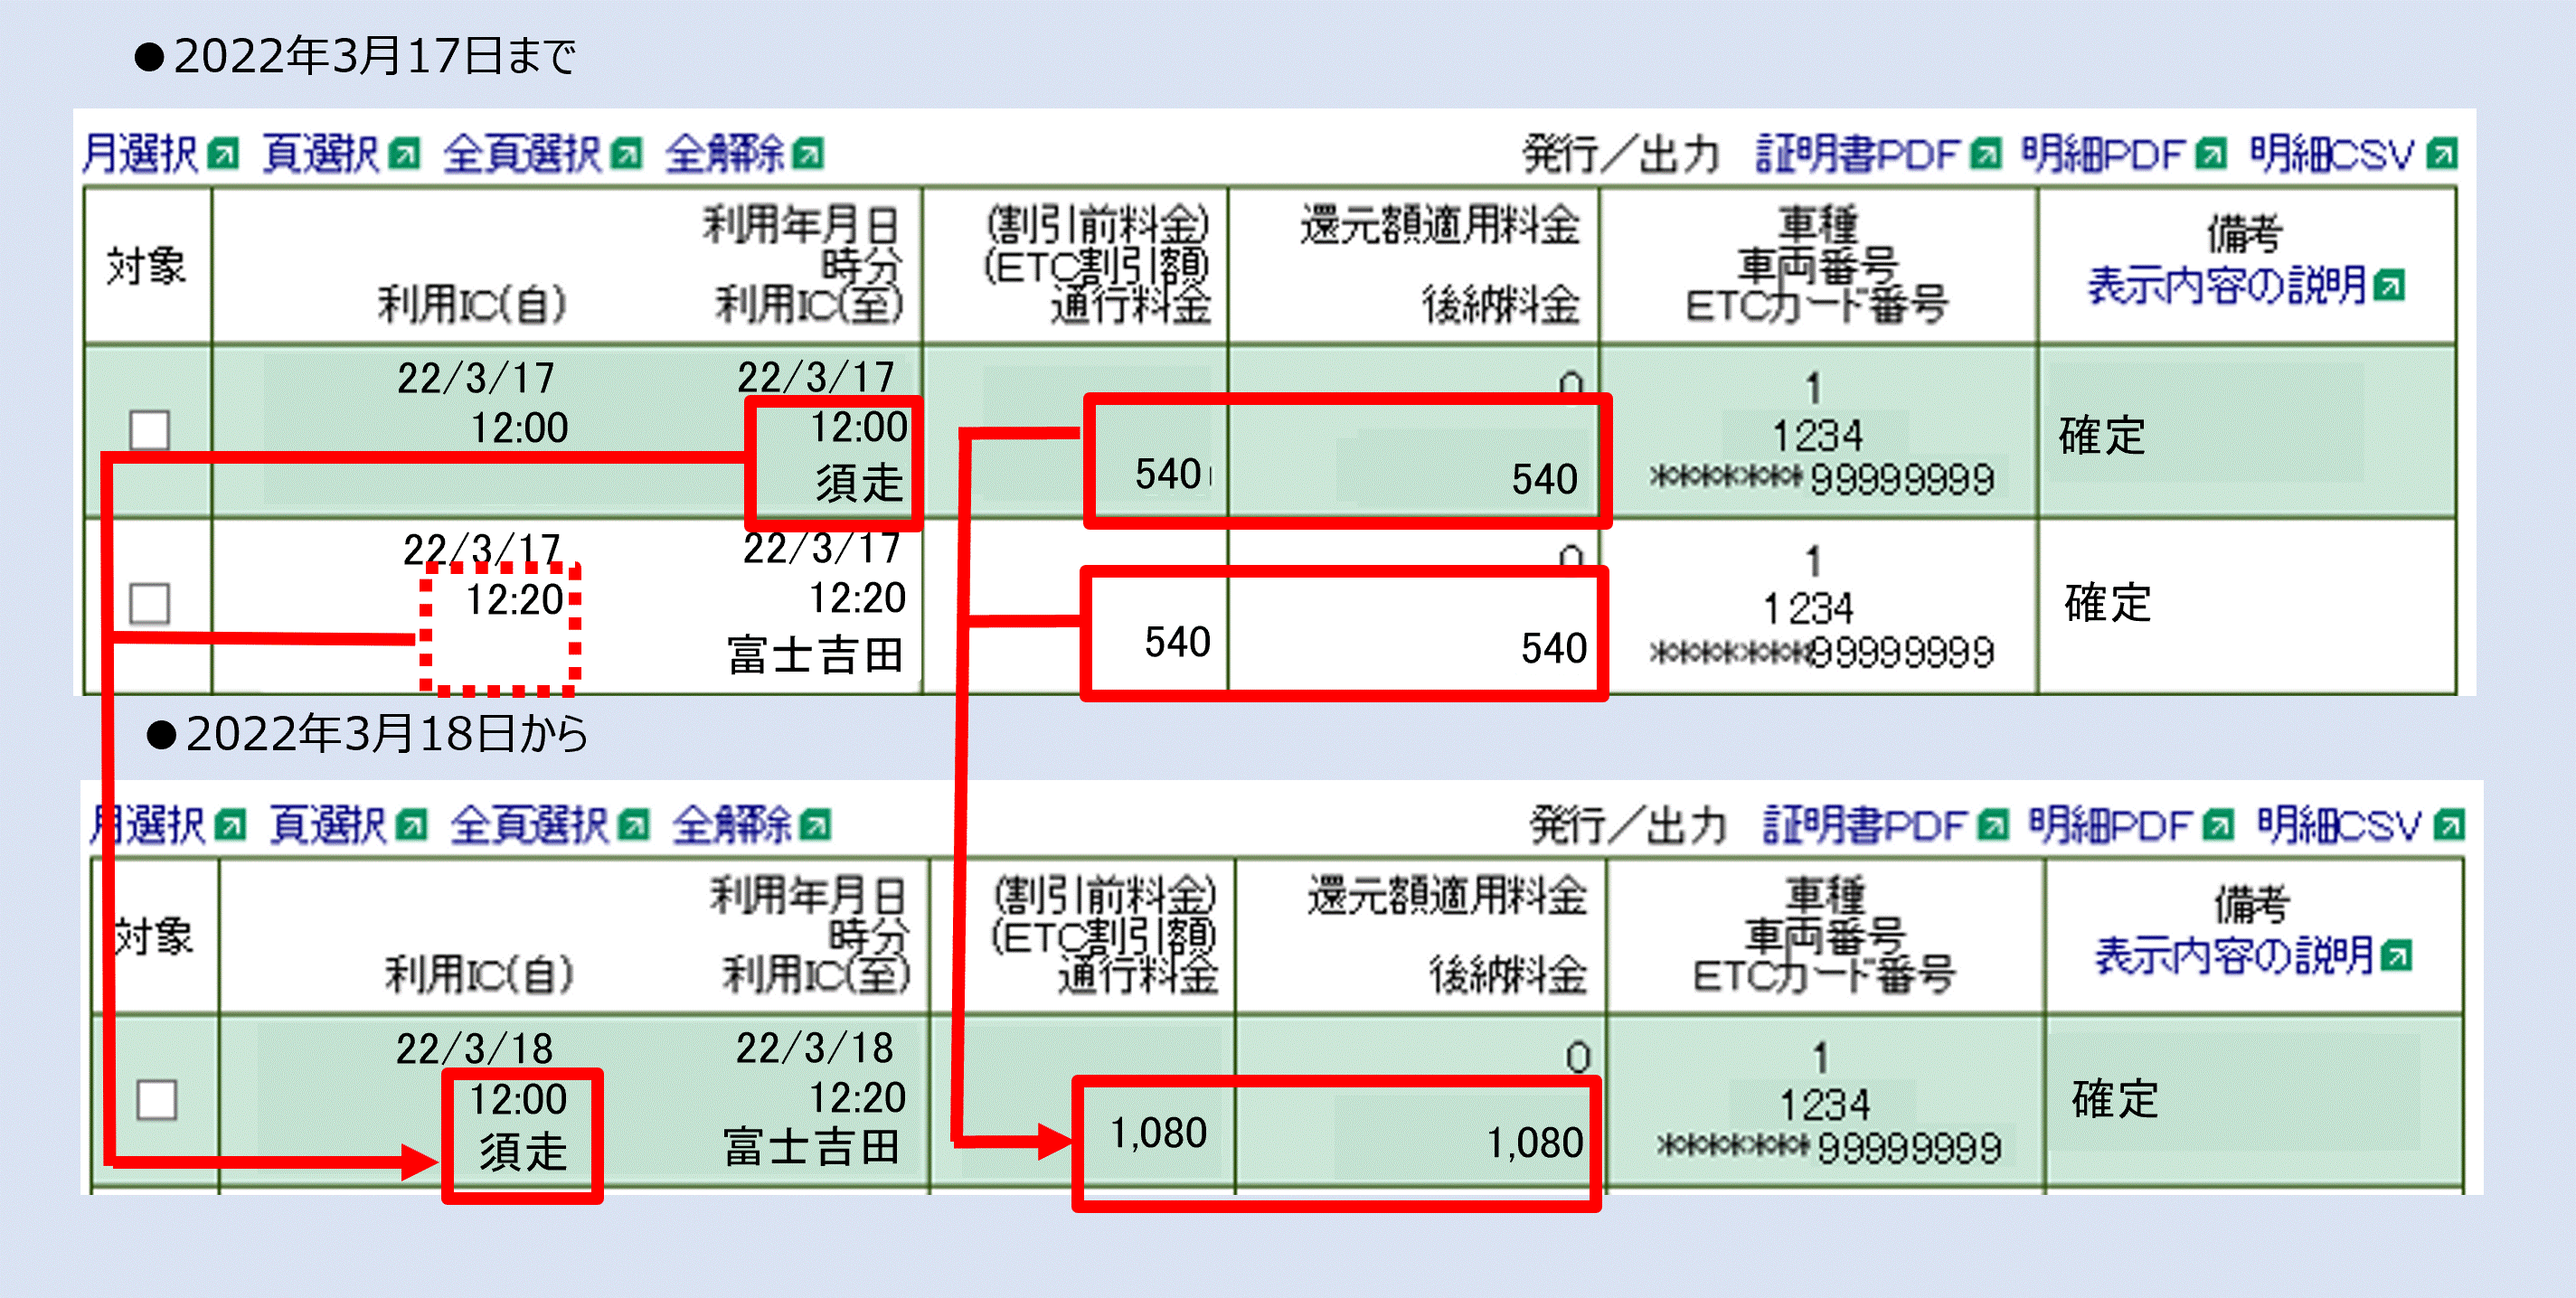 東富士五湖道路における利用明細の表示について